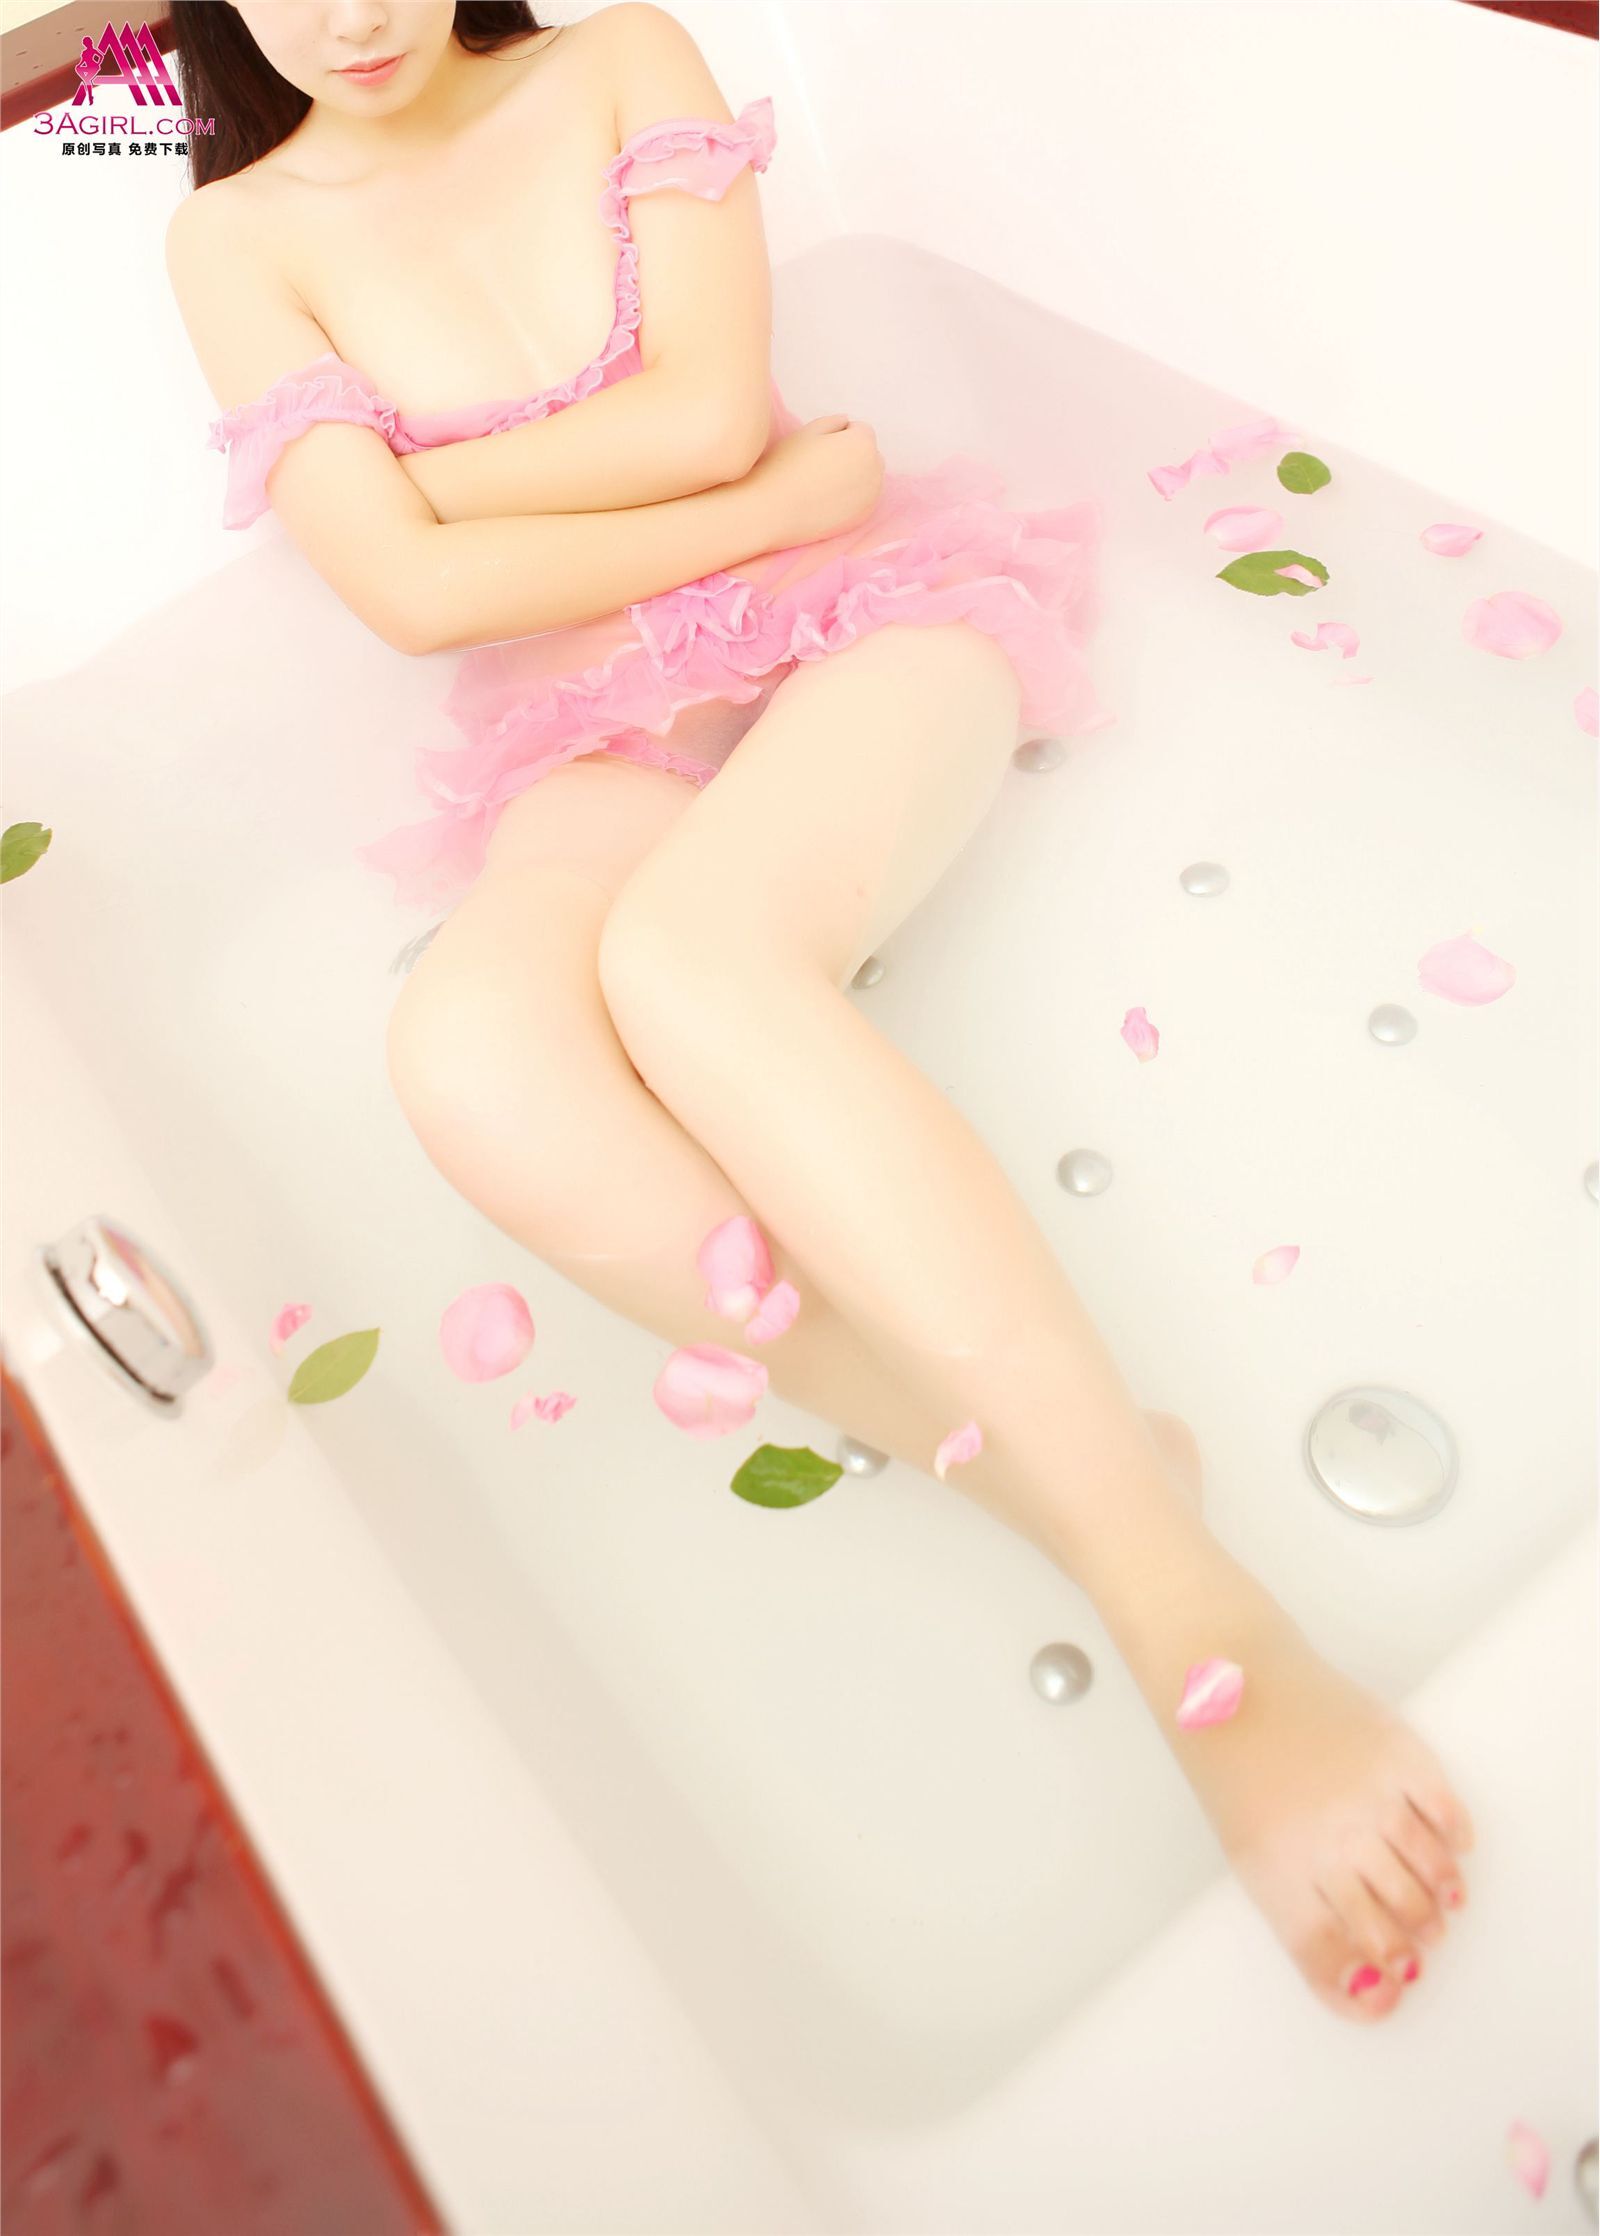 [3agirl] [04-15] AAA girl no.250 water bud: Xiaoyu